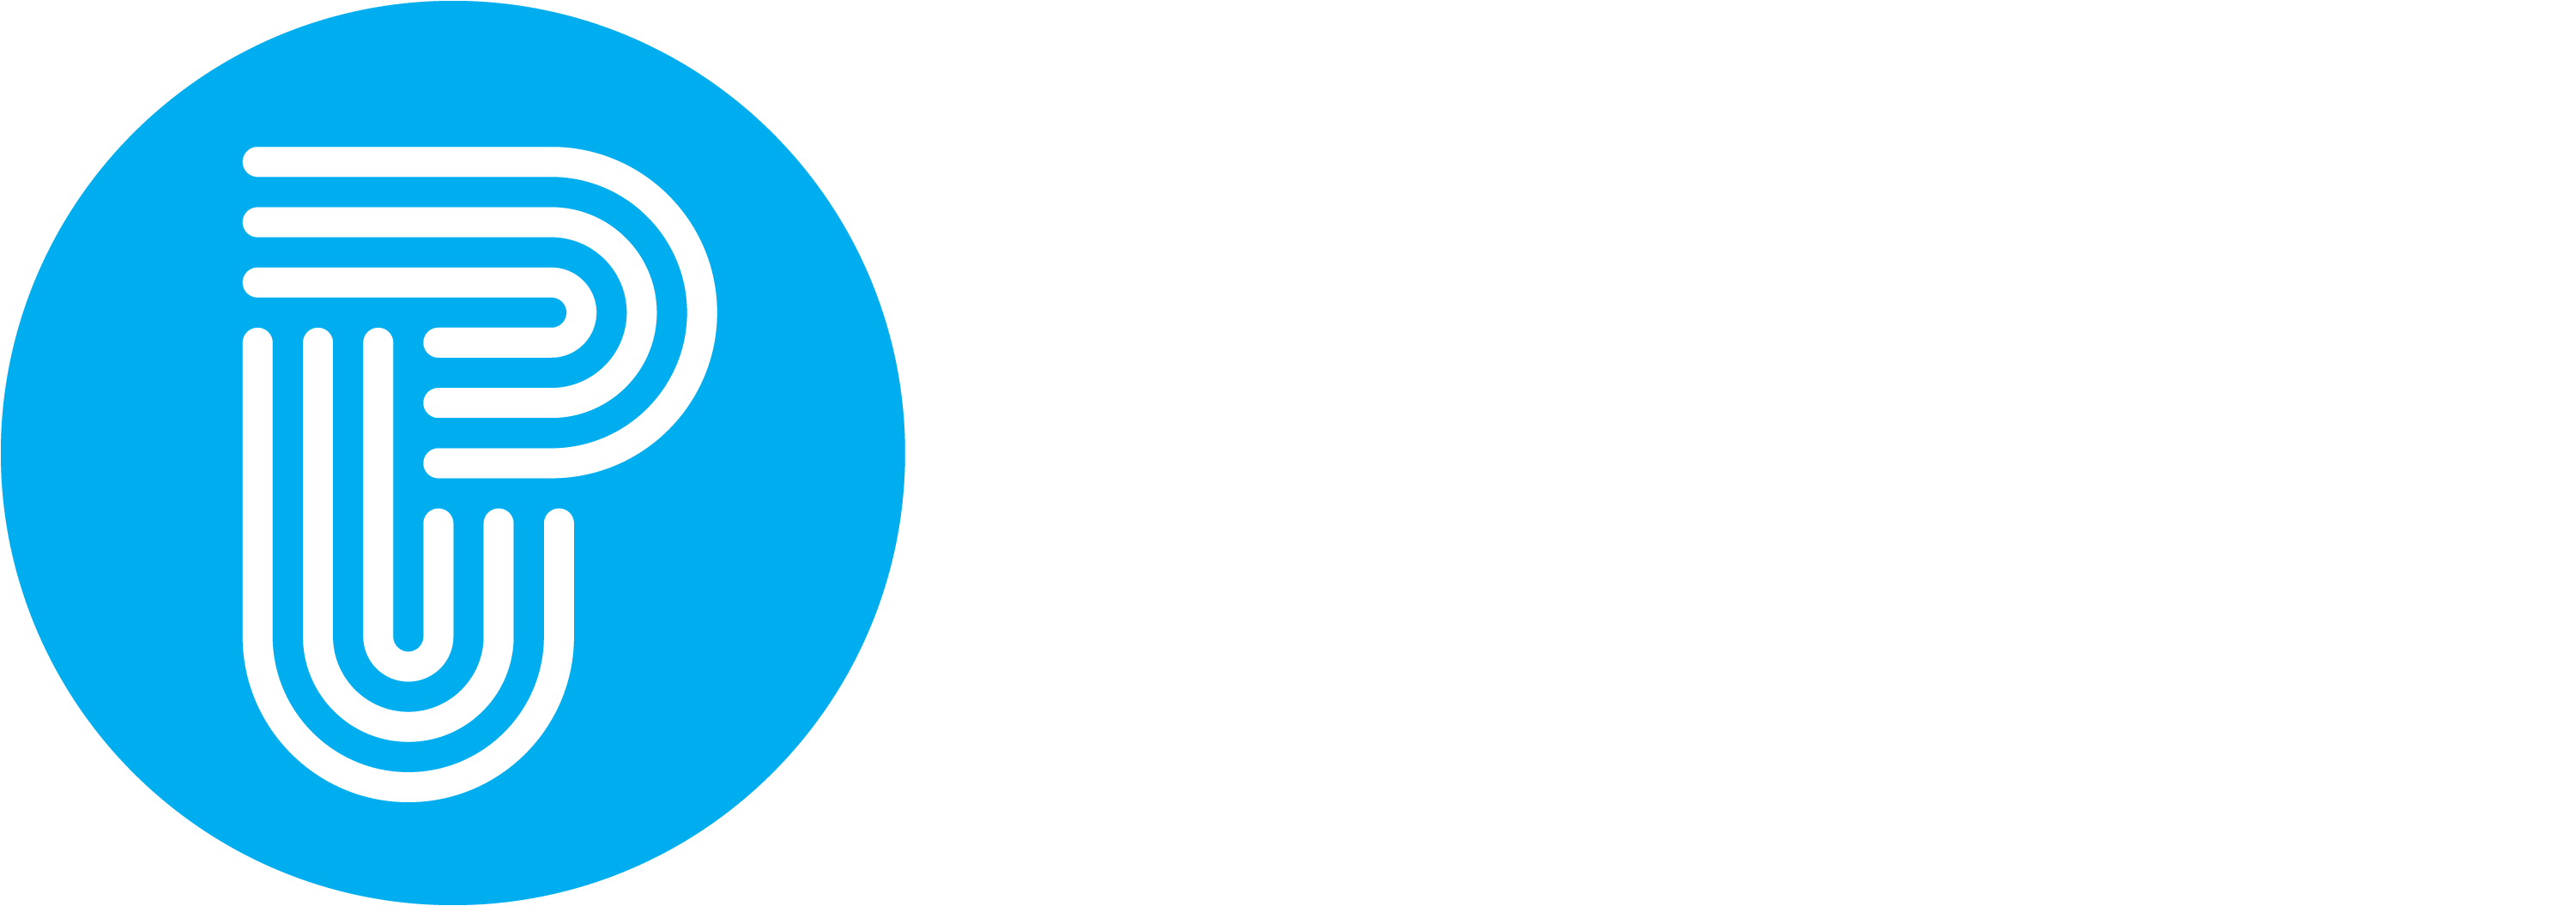 Peptalk Publishers